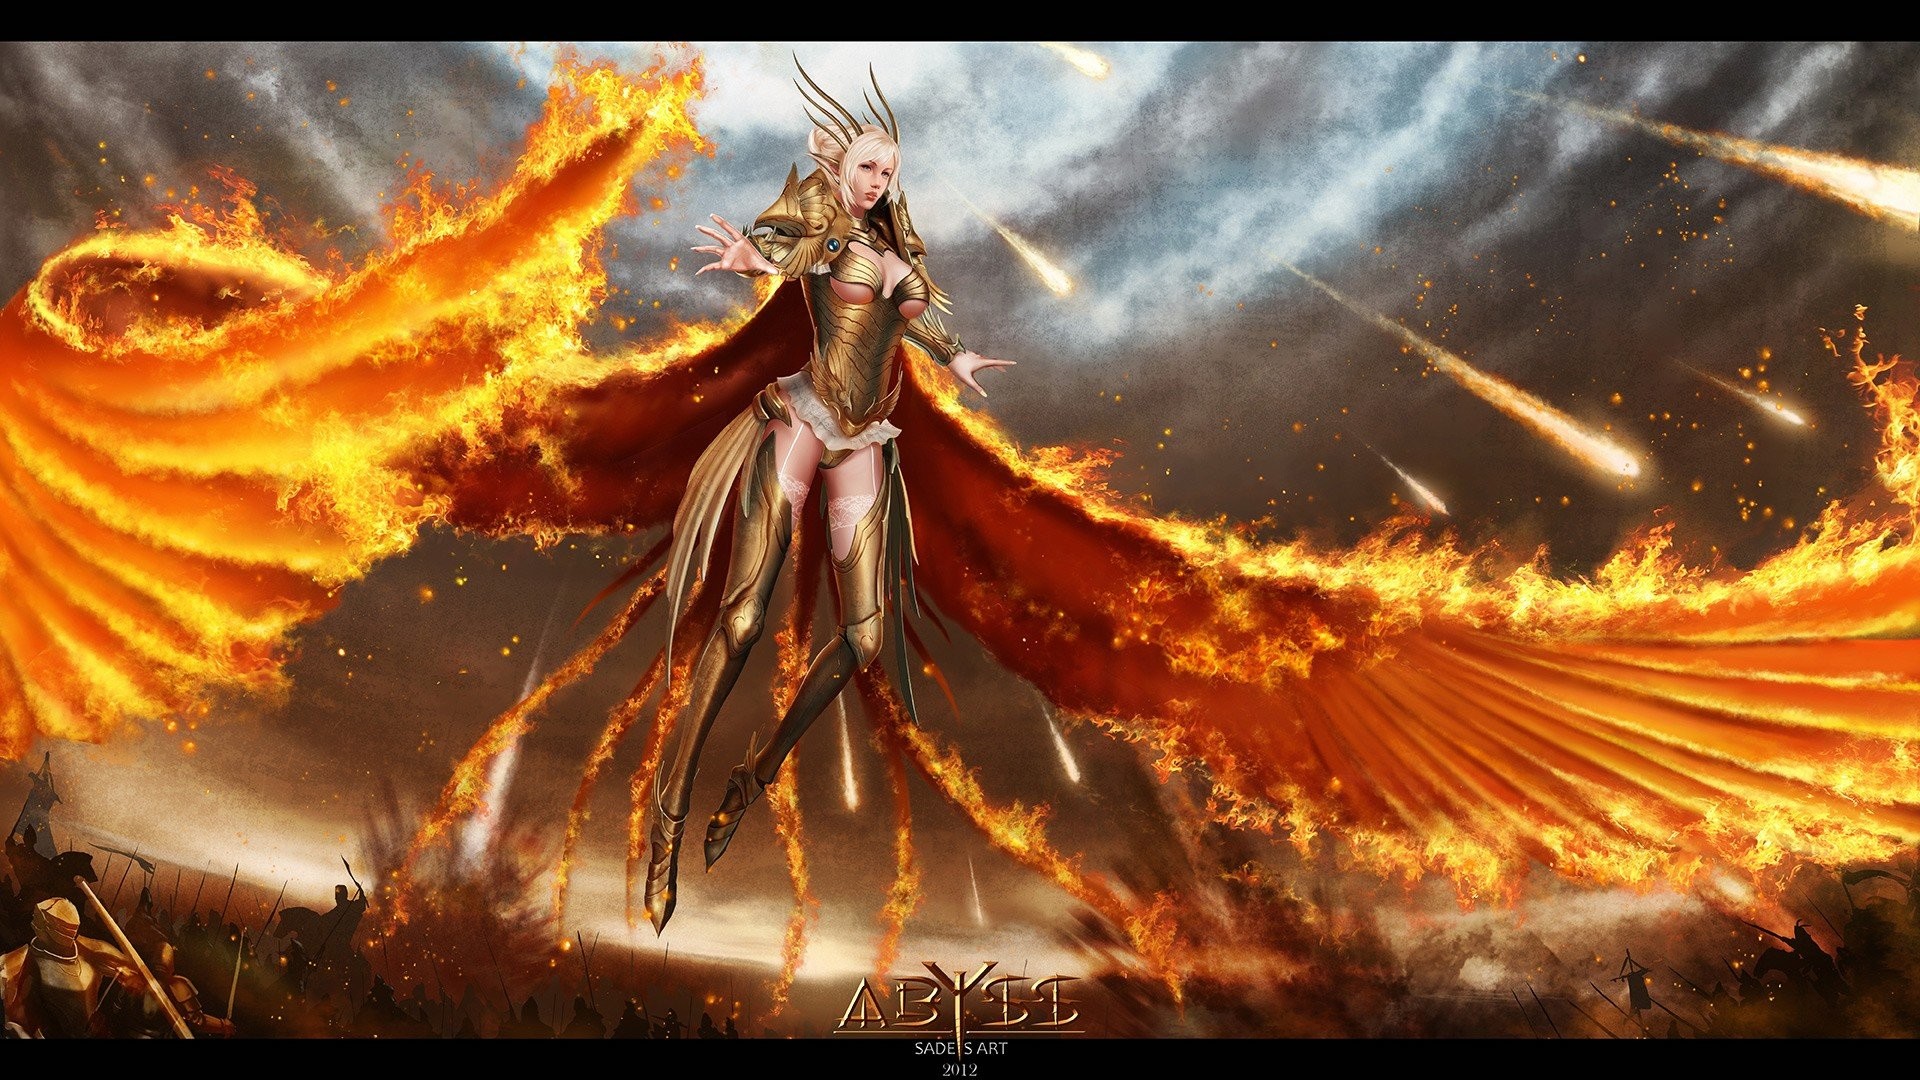 1920x1080 Women flames wings fire fantasy art battles warriors wallpaper |   | 275358 | WallpaperUP